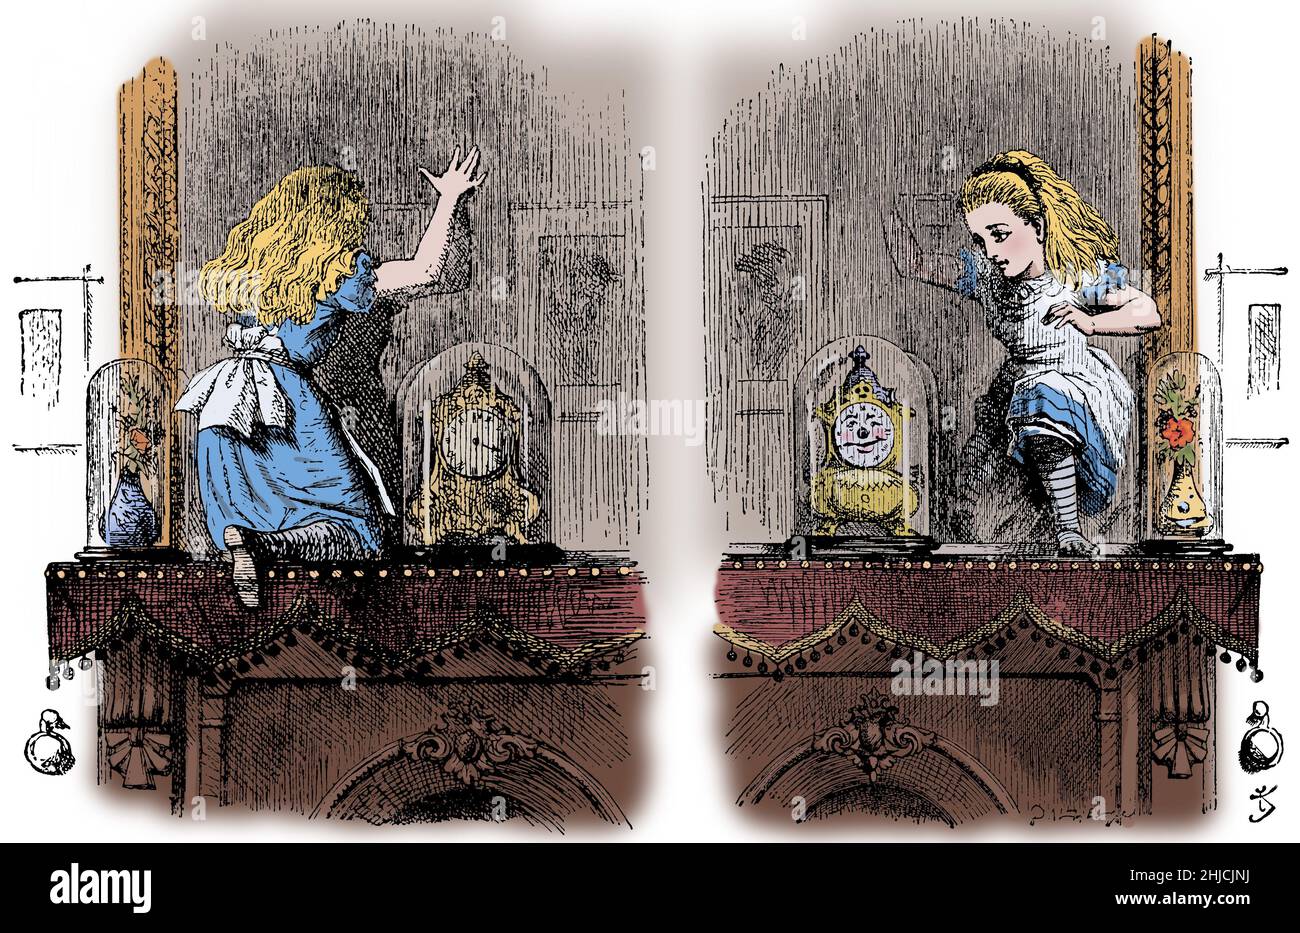 Through the Looking-Glass, and What Alice Found There (1871) ist ein Roman von Lewis Carroll. Auf den Kaminsims kletternd, blickt sie auf den wandhängenden Spiegel hinter dem Kamin und entdeckt zu ihrer Überraschung, dass sie durch ihn in eine alternative Welt treten kann. John Tenniel (28. Februar 1820 - 25. Februar 1914) war ein englischer Illustrator, Graphikhumorist und politischer Karikaturist. Stockfoto